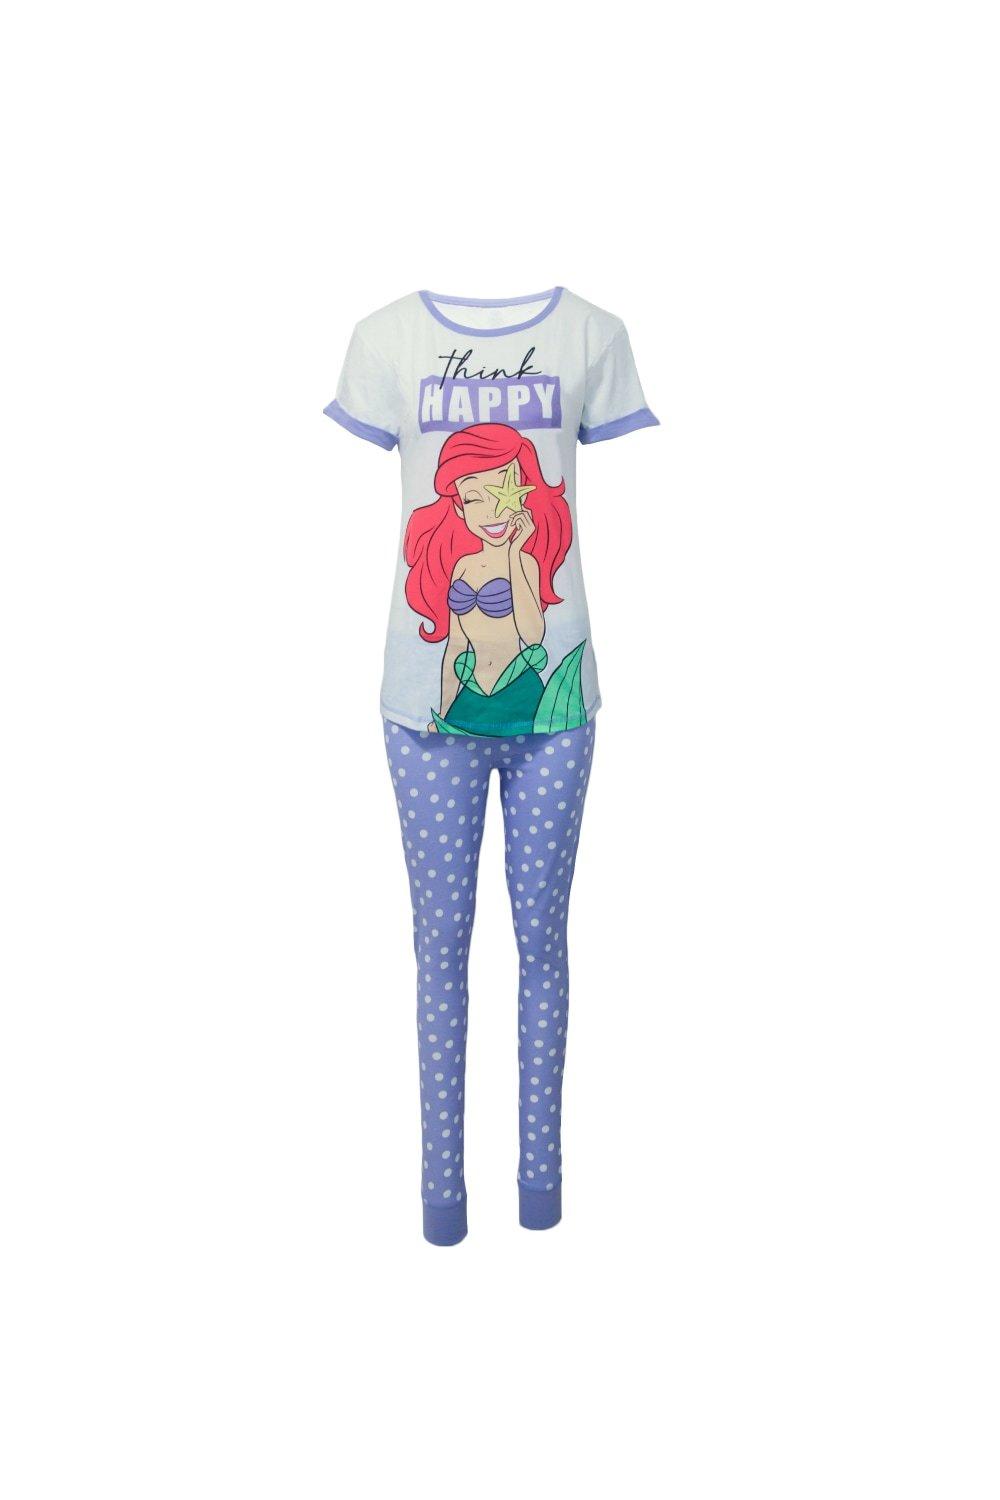 Little Mermaid Ariel Pyjama Set